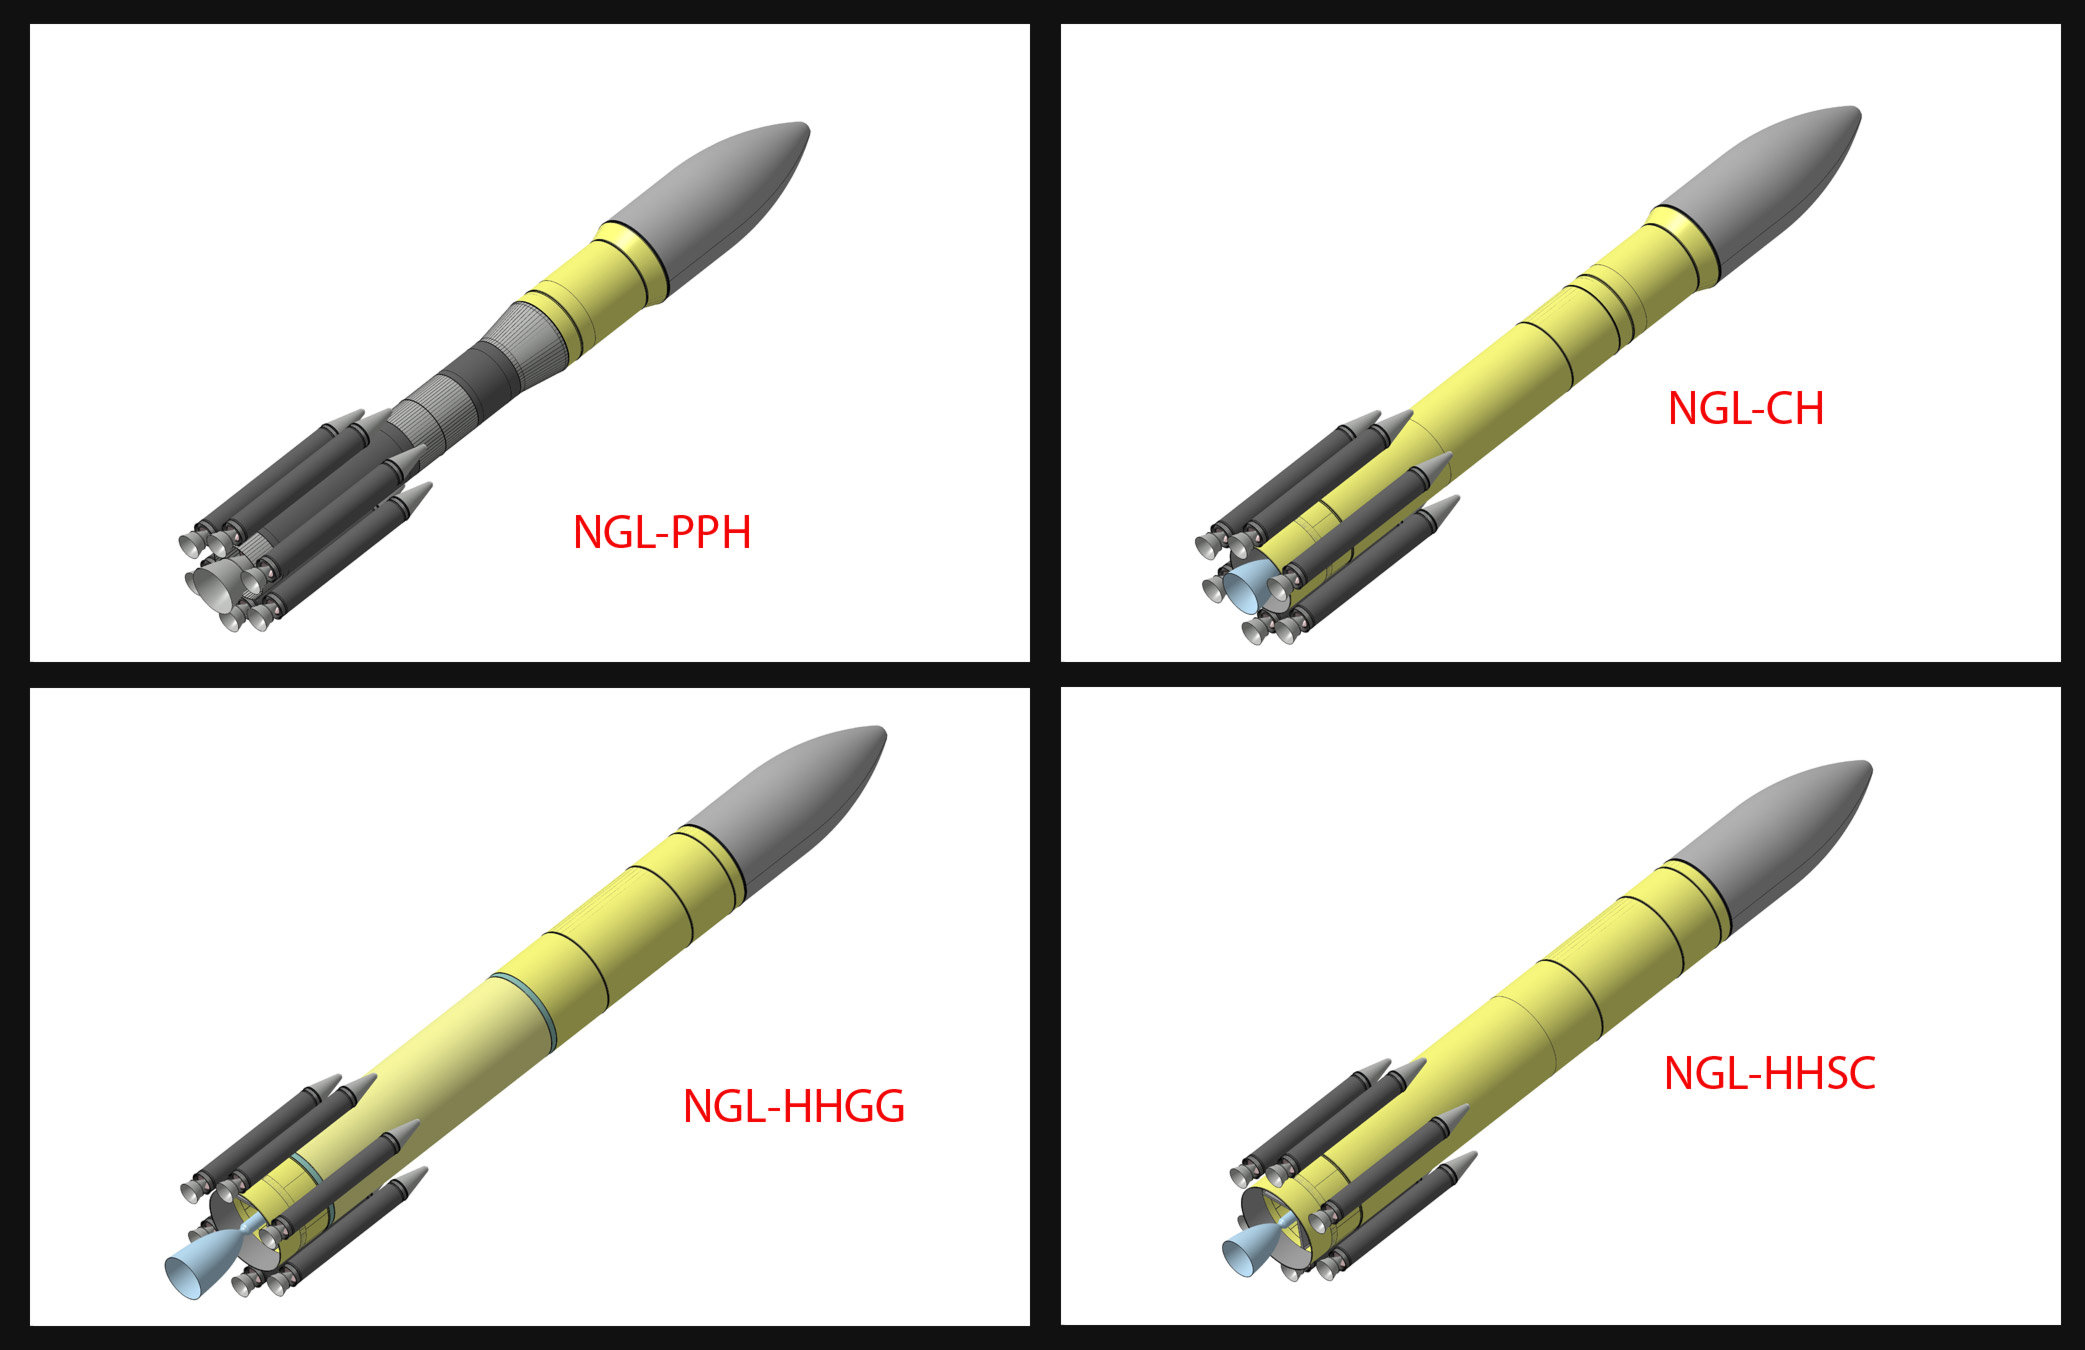 Les 4 concepts retenus, qui préfigurent ce que pourrait être le lanceur qui succèdera à Ariane 5 à l'horizon 2025. © Astrium